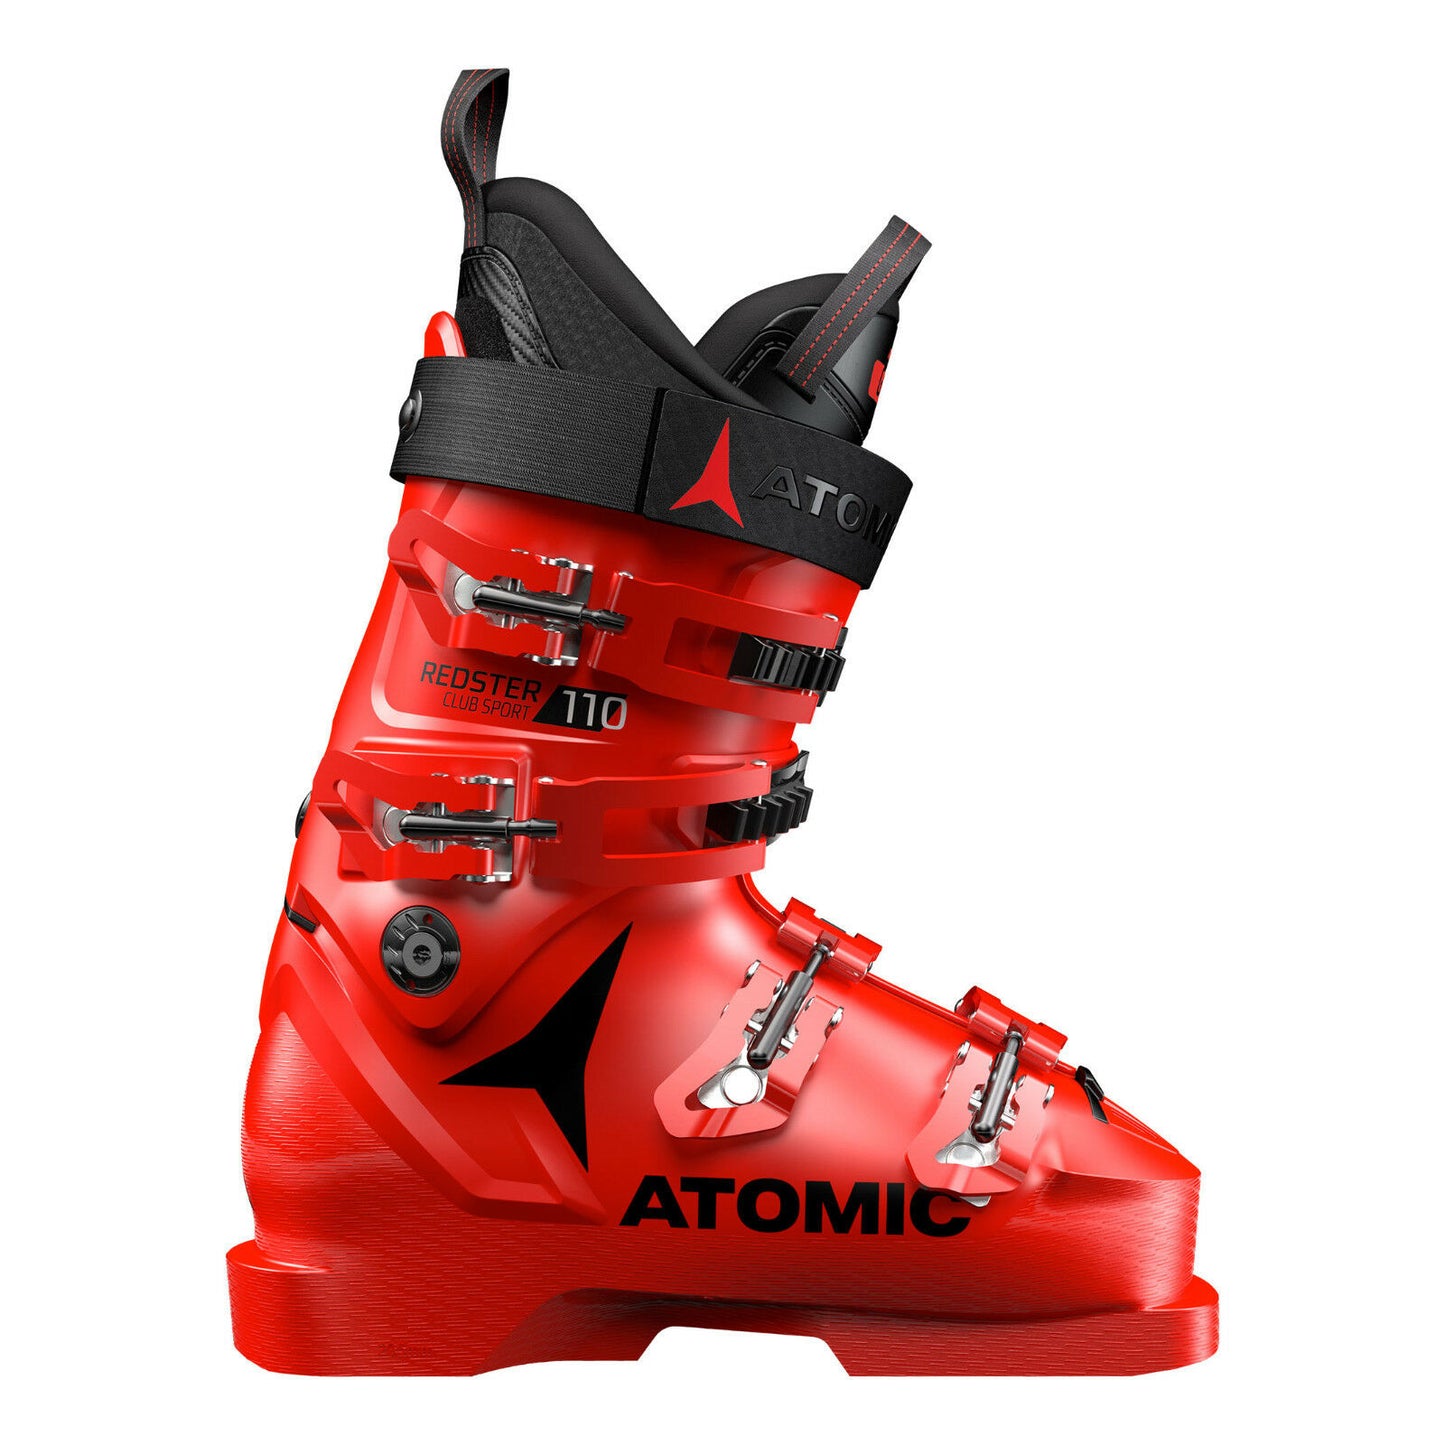 Scarponi da sci da gara Atomic REDSTER CLUB SPORT 110 2018/19 ski boots 96mm fit